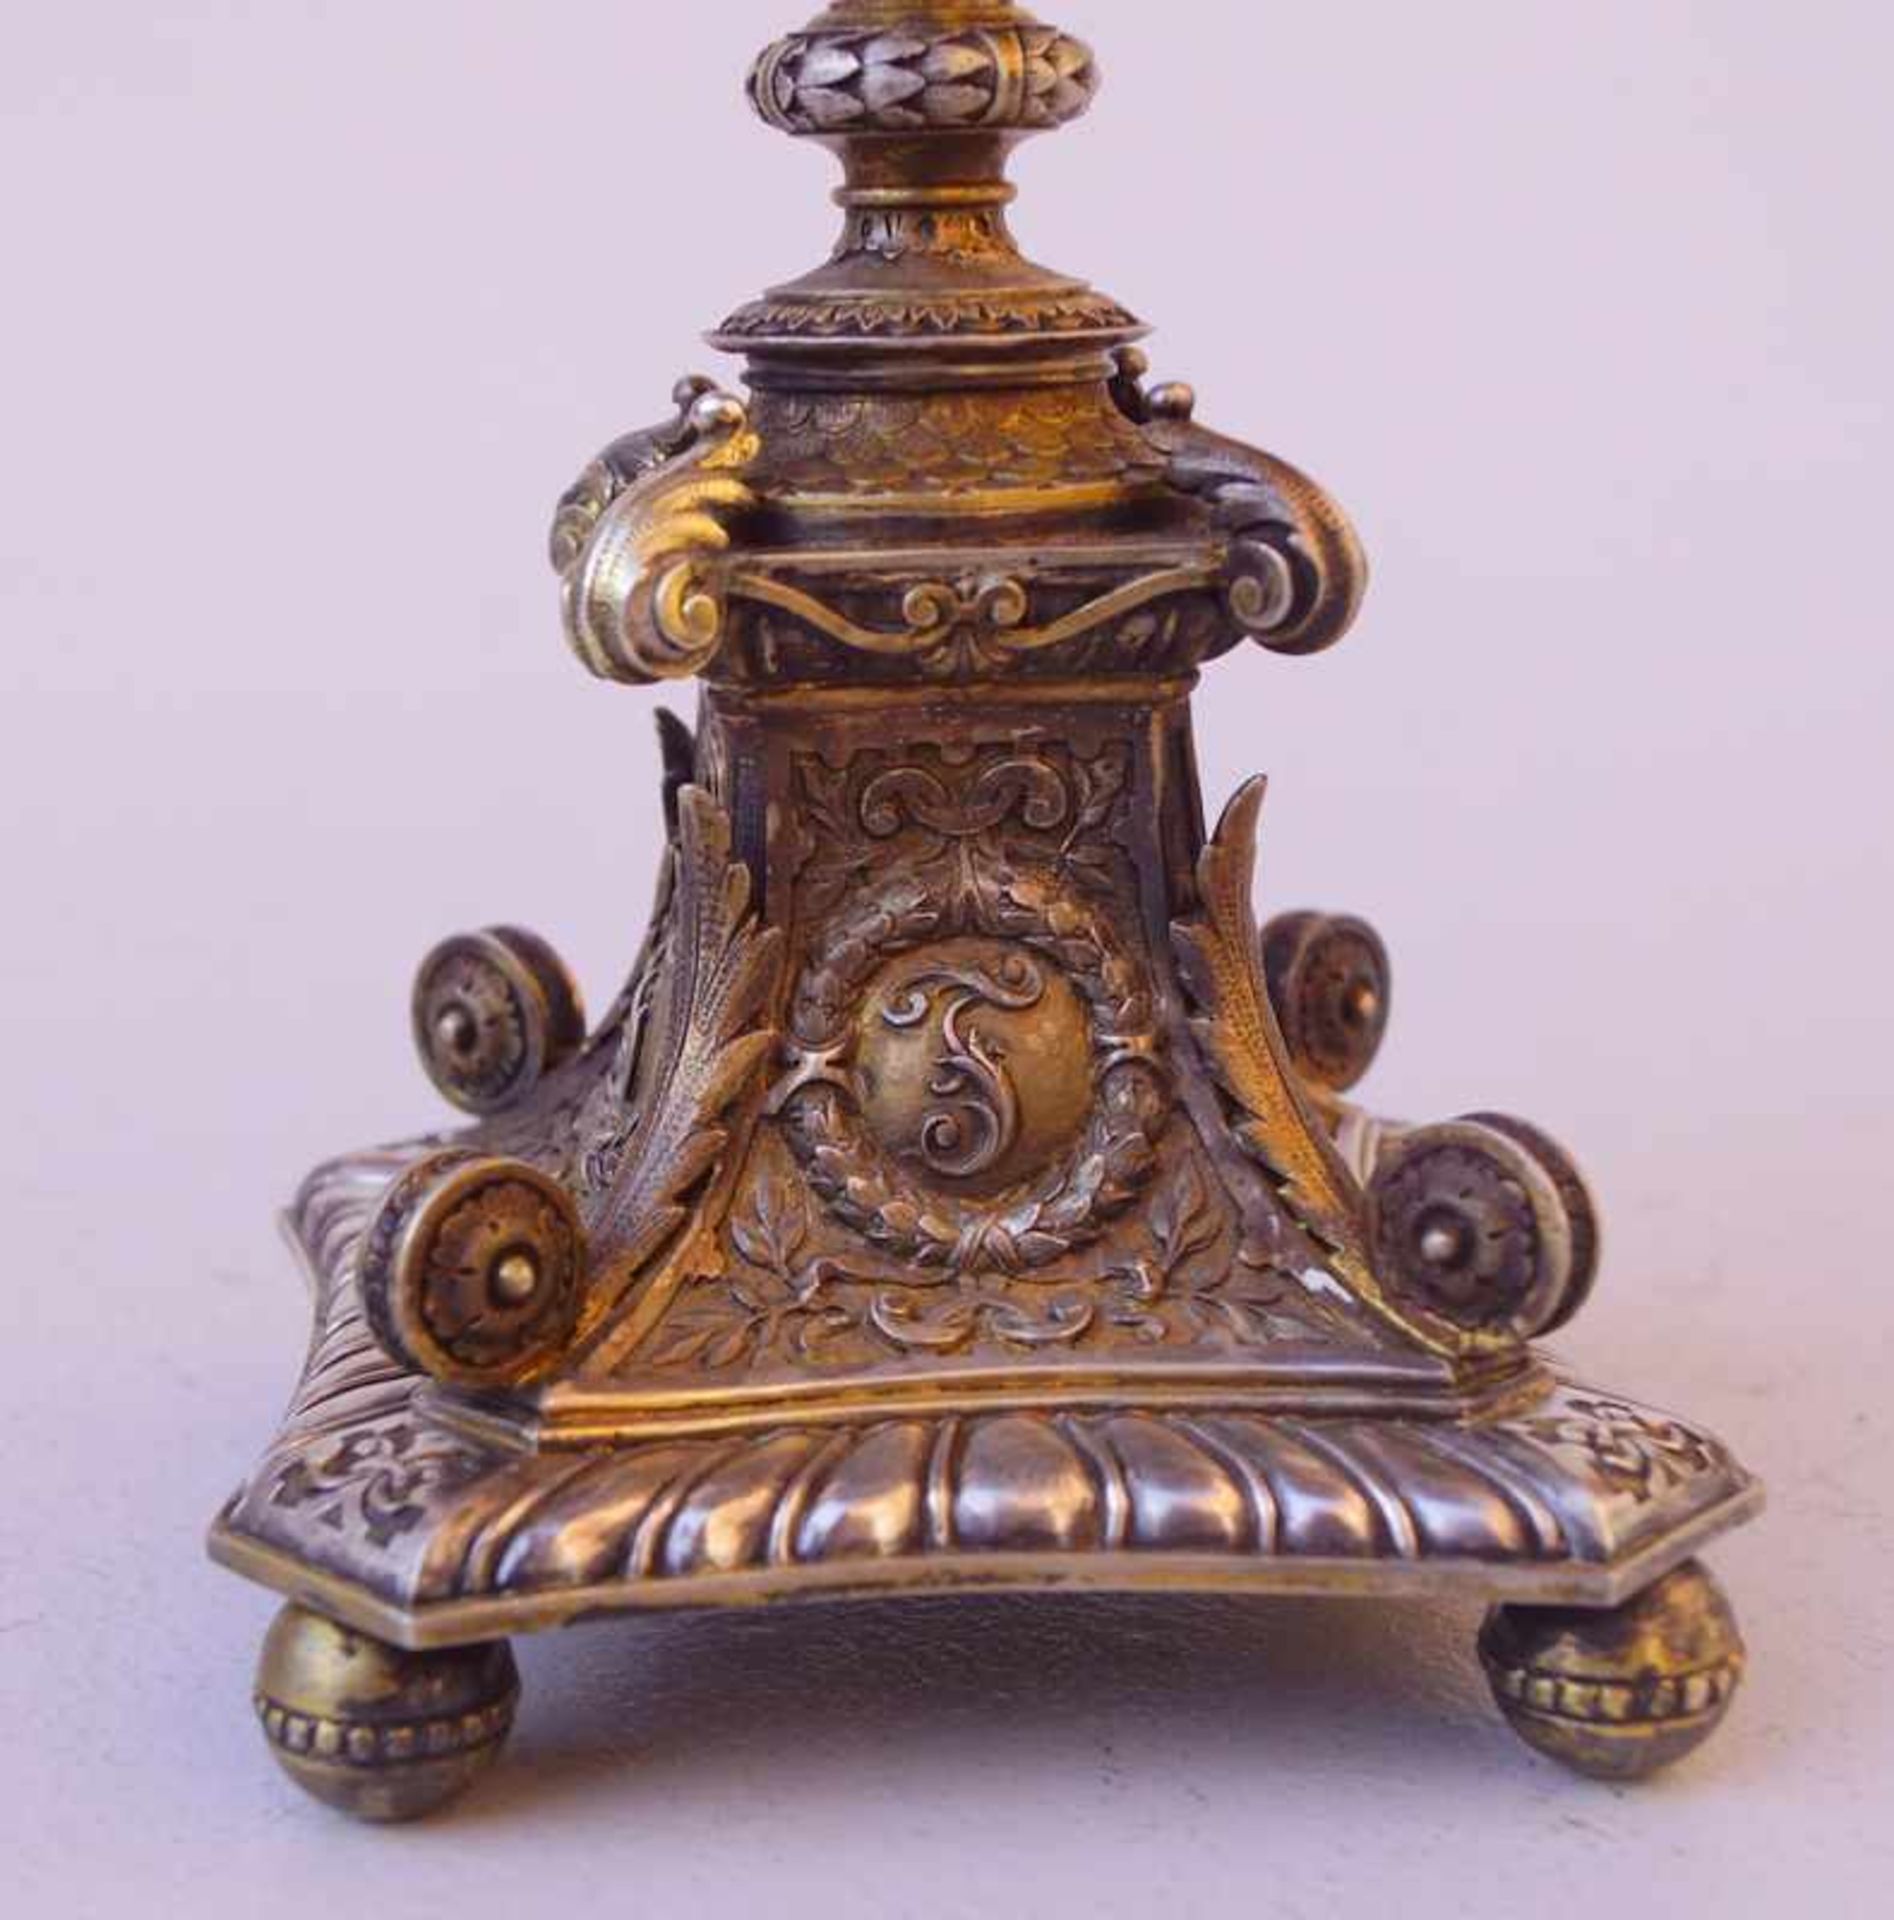 Herrschaftlicher Juwelenbesezter Pokal von Friedrich von Baden 1881 Diplomatengeschenk oder - Image 3 of 5